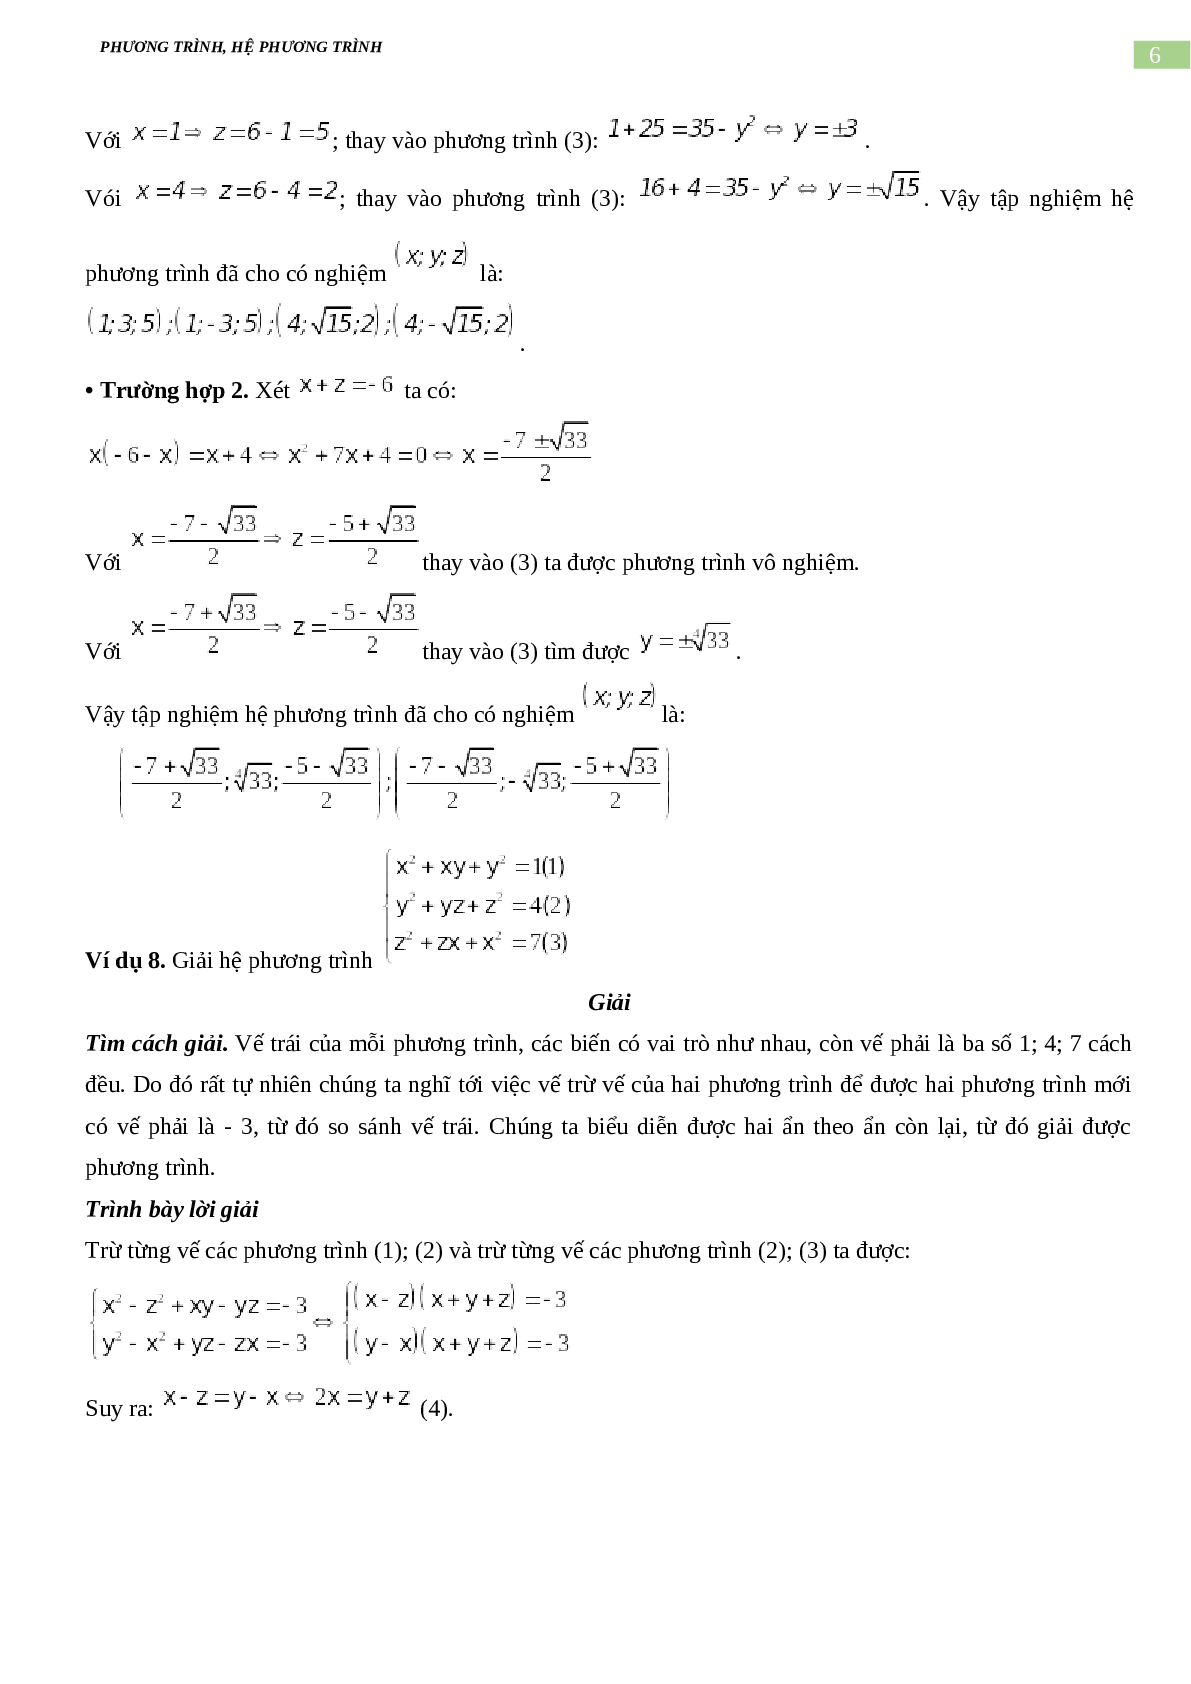 Bài tập về phương trình, hệ phương trình, bất phương trình không mẫu mực có đáp án, chọn lọc (trang 6)